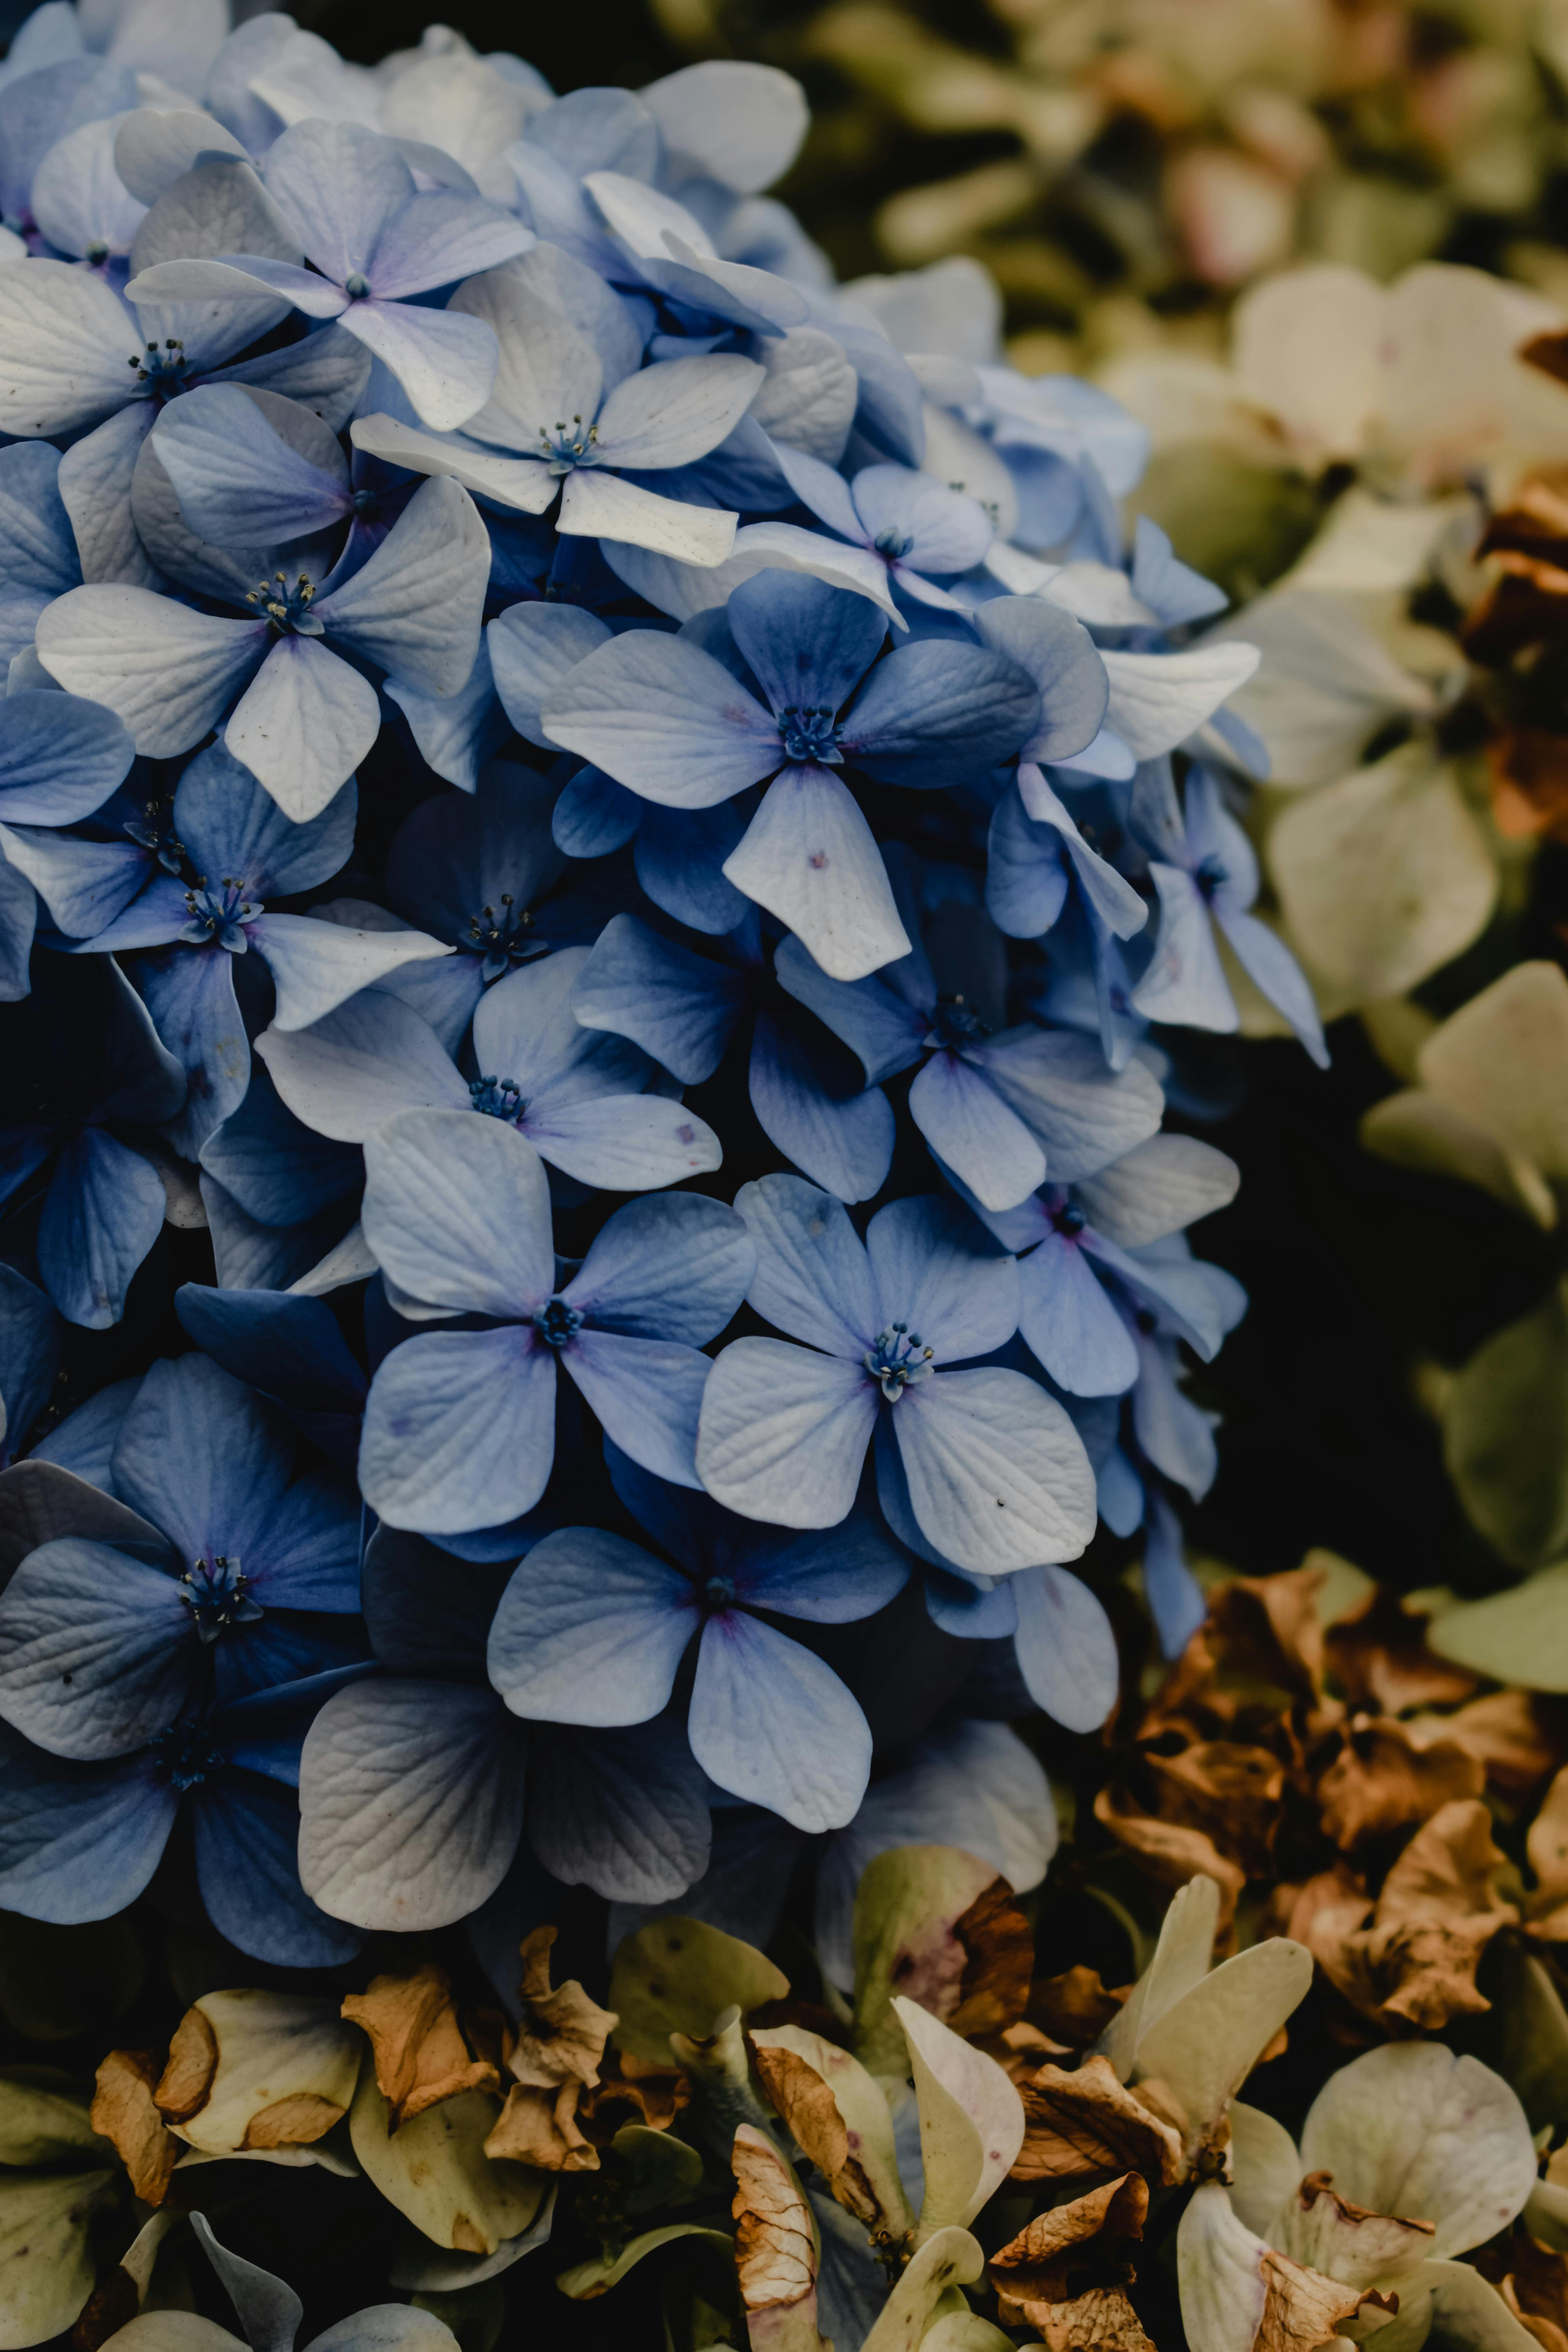 Bạn muốn thưởng thức vẻ đẹp hoang sơ và quyến rũ của Hoa Cẩm Tú Cầu? Hãy xem những bức ảnh đẹp về loài hoa này và cùng ngắm nhìn màu sắc tuyệt đẹp của nó trên đất nước Cao Bằng.